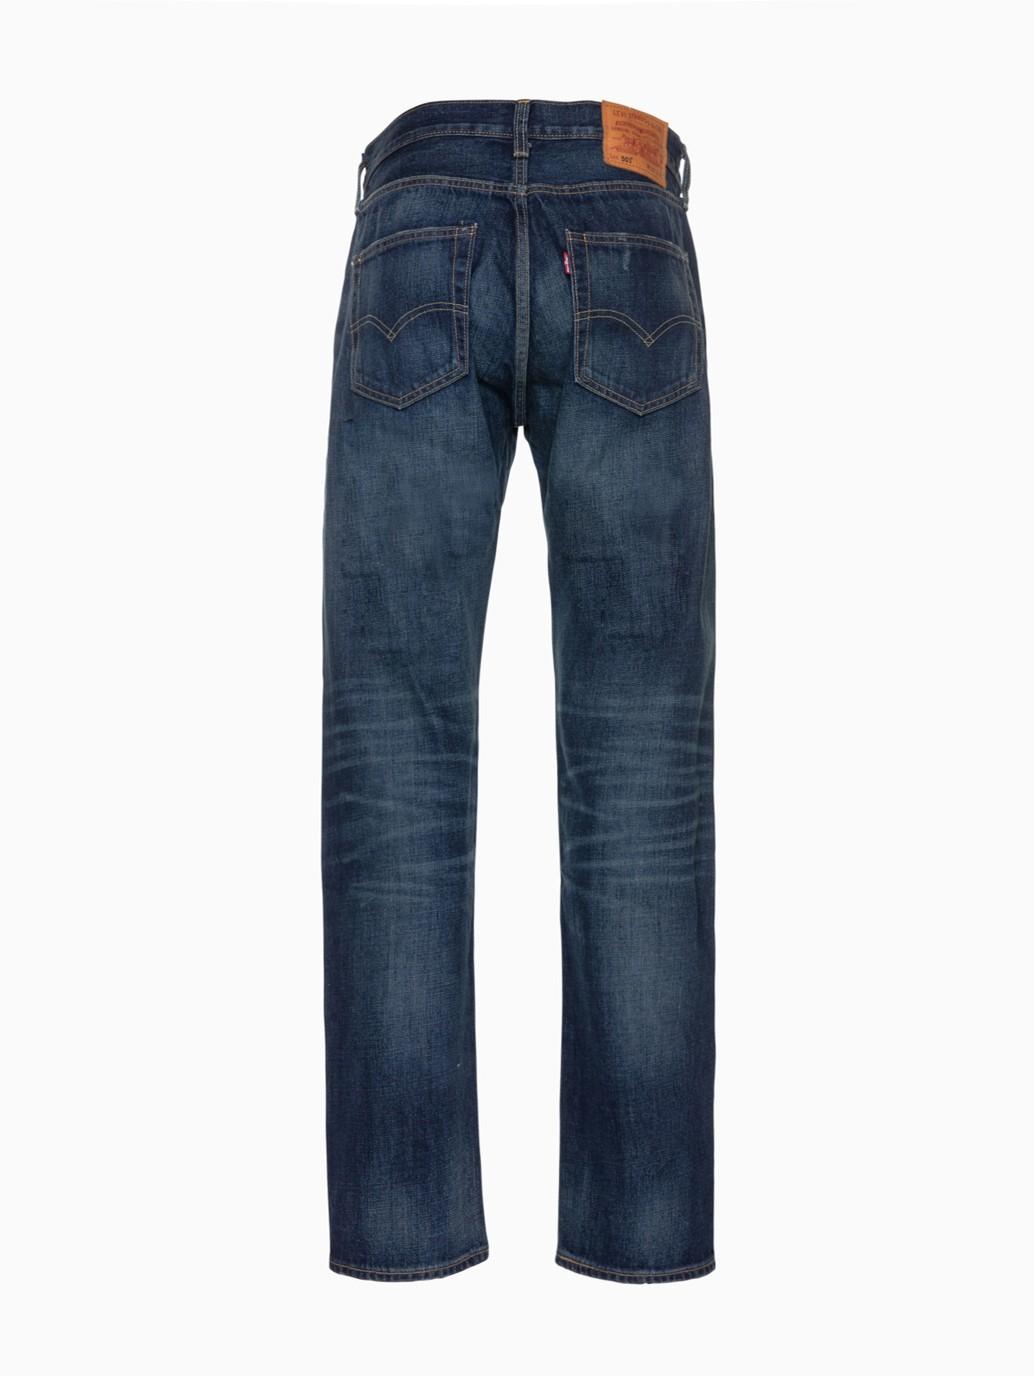 Buy Levi's® Men's 501® Original Fit Jeans | Levi’s® Official Online ...